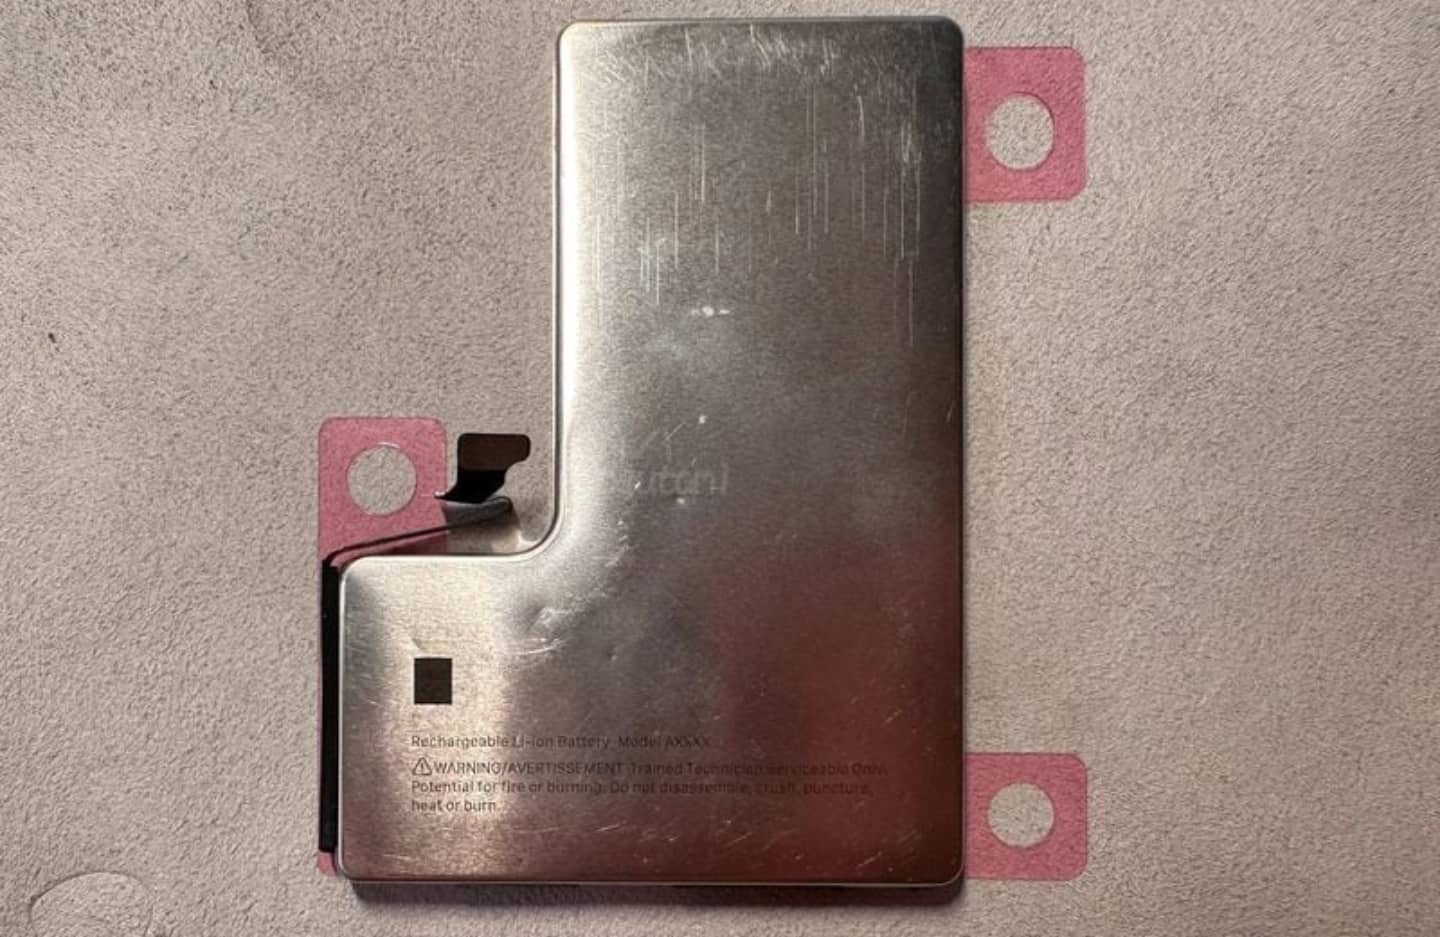 imagen publicada en MacRumors donde se aprecia una batería de acero inoxidable en forma de L para los futuros iPhone